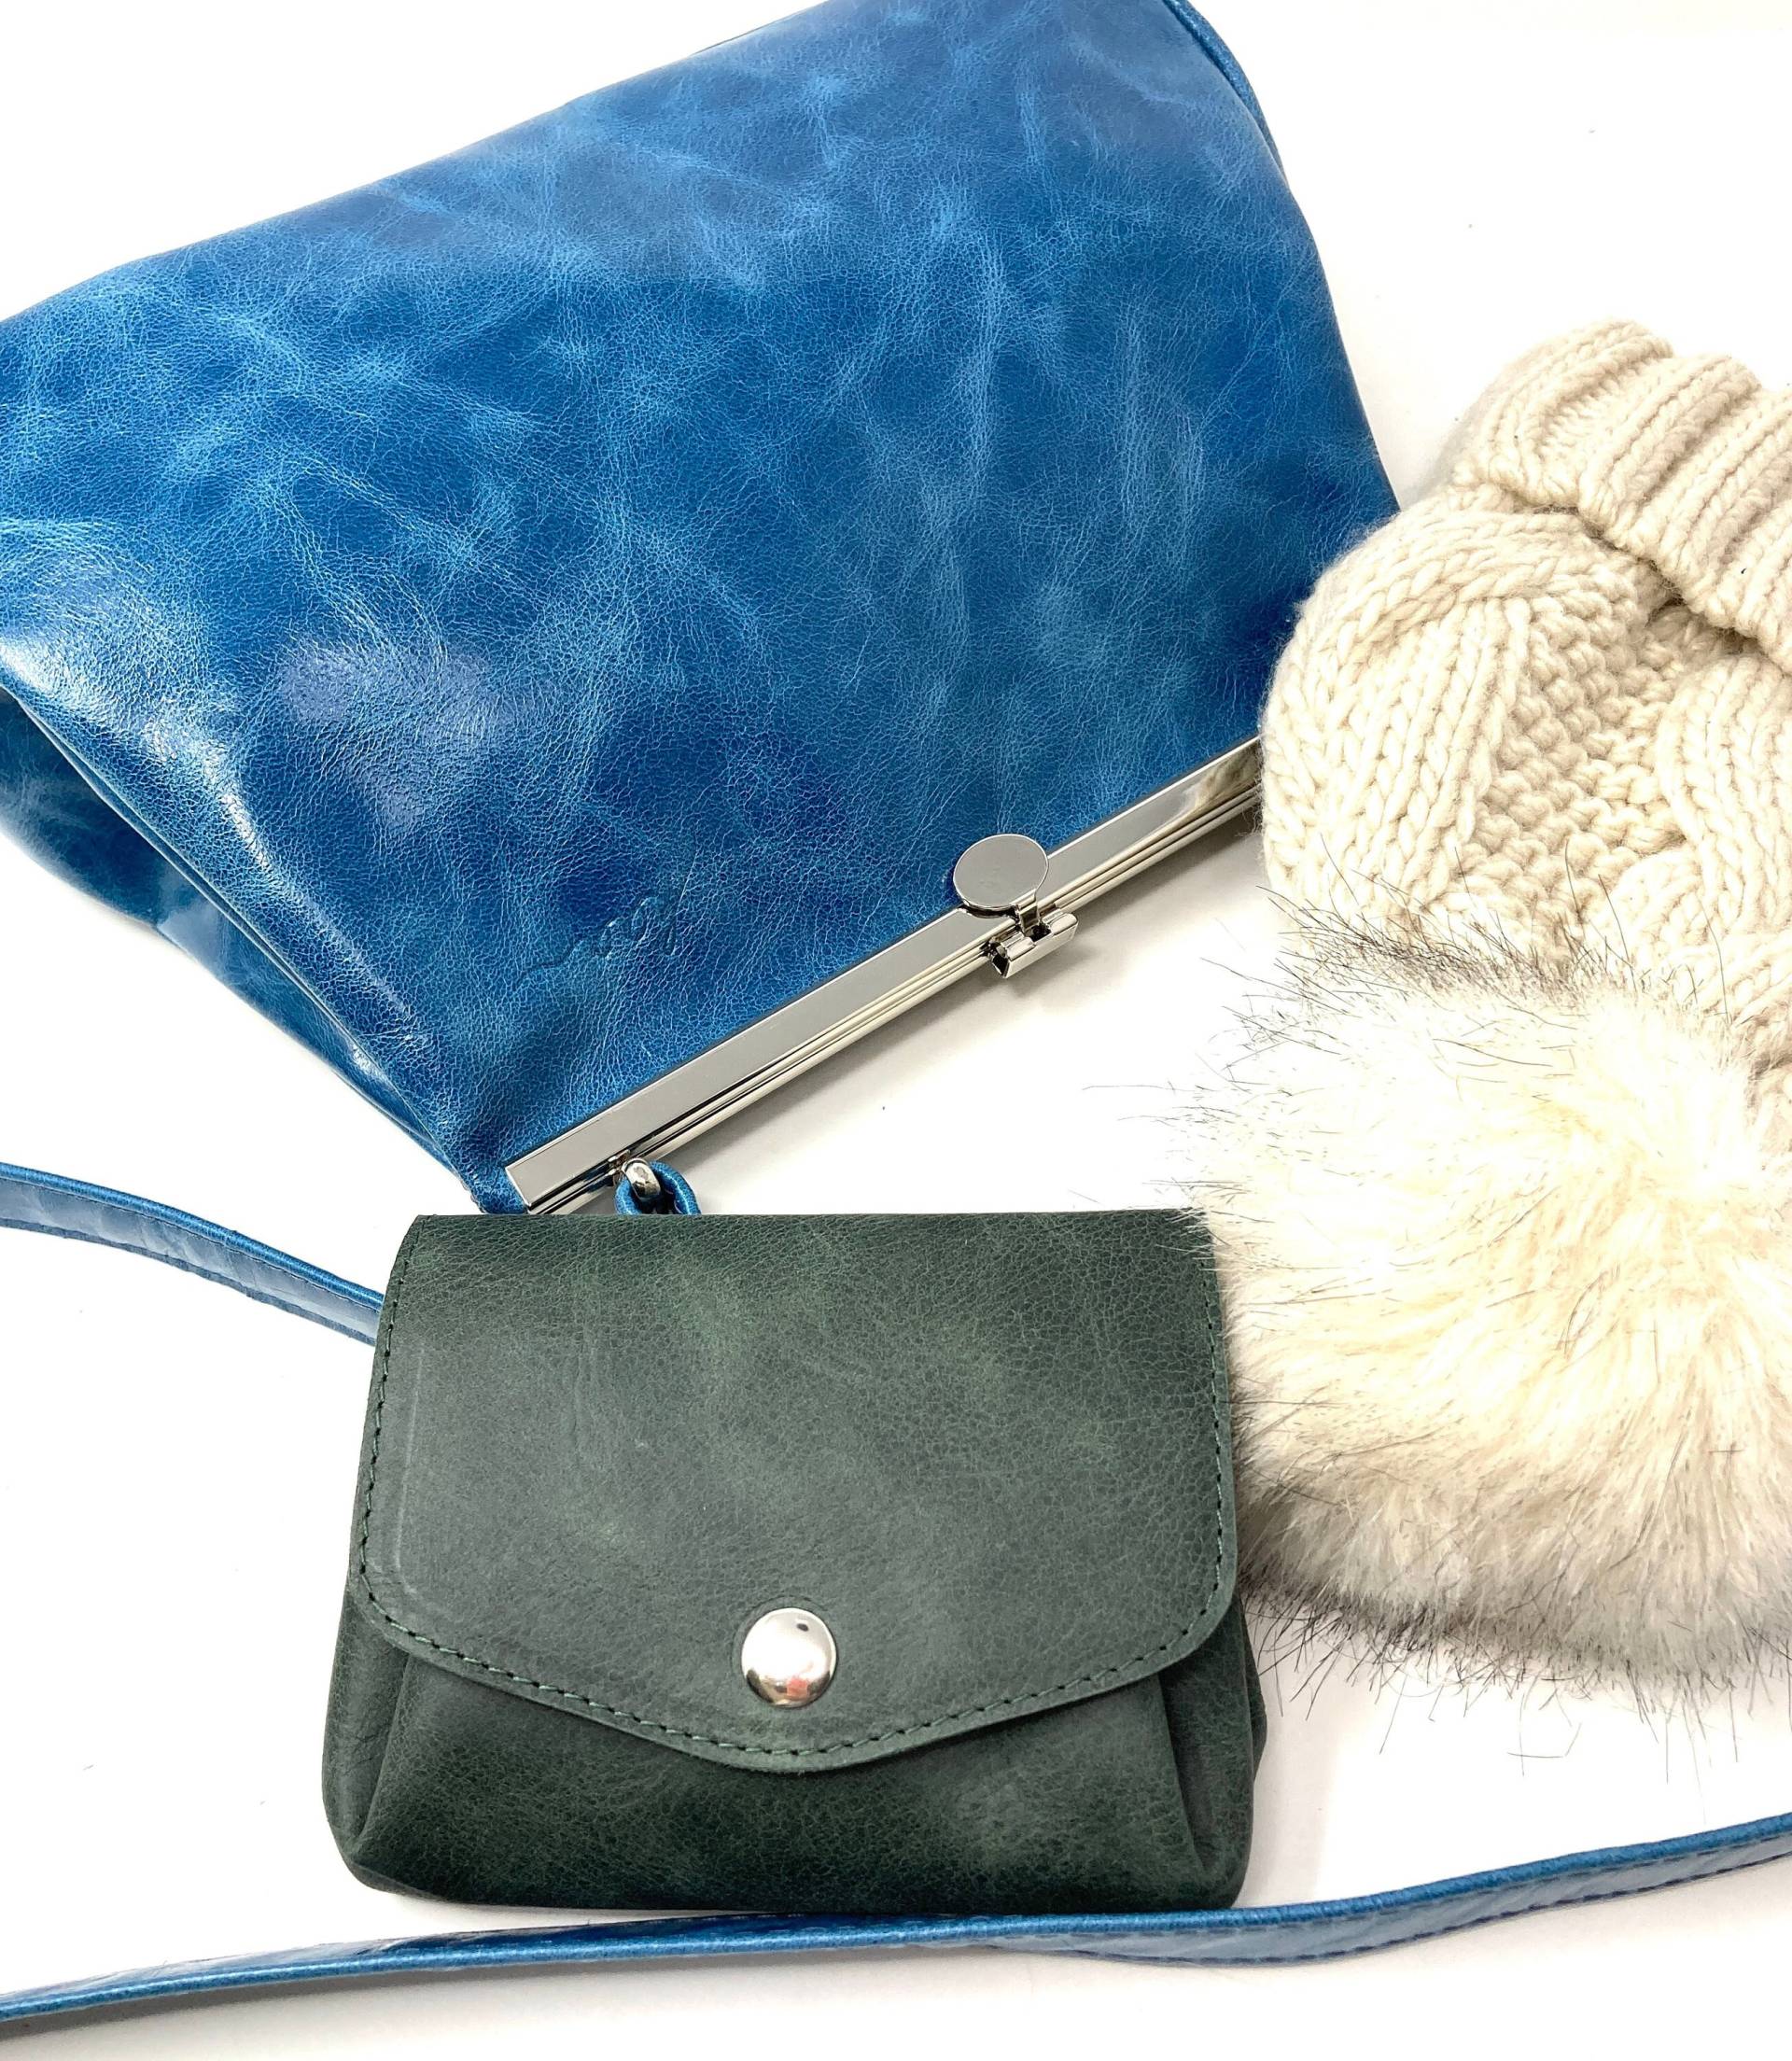 Blaue Tasche Damen Aus Glänzendem Leder, Das Perfekte Weihnachtsgeschenk Für Die Freundin von kaaberlin